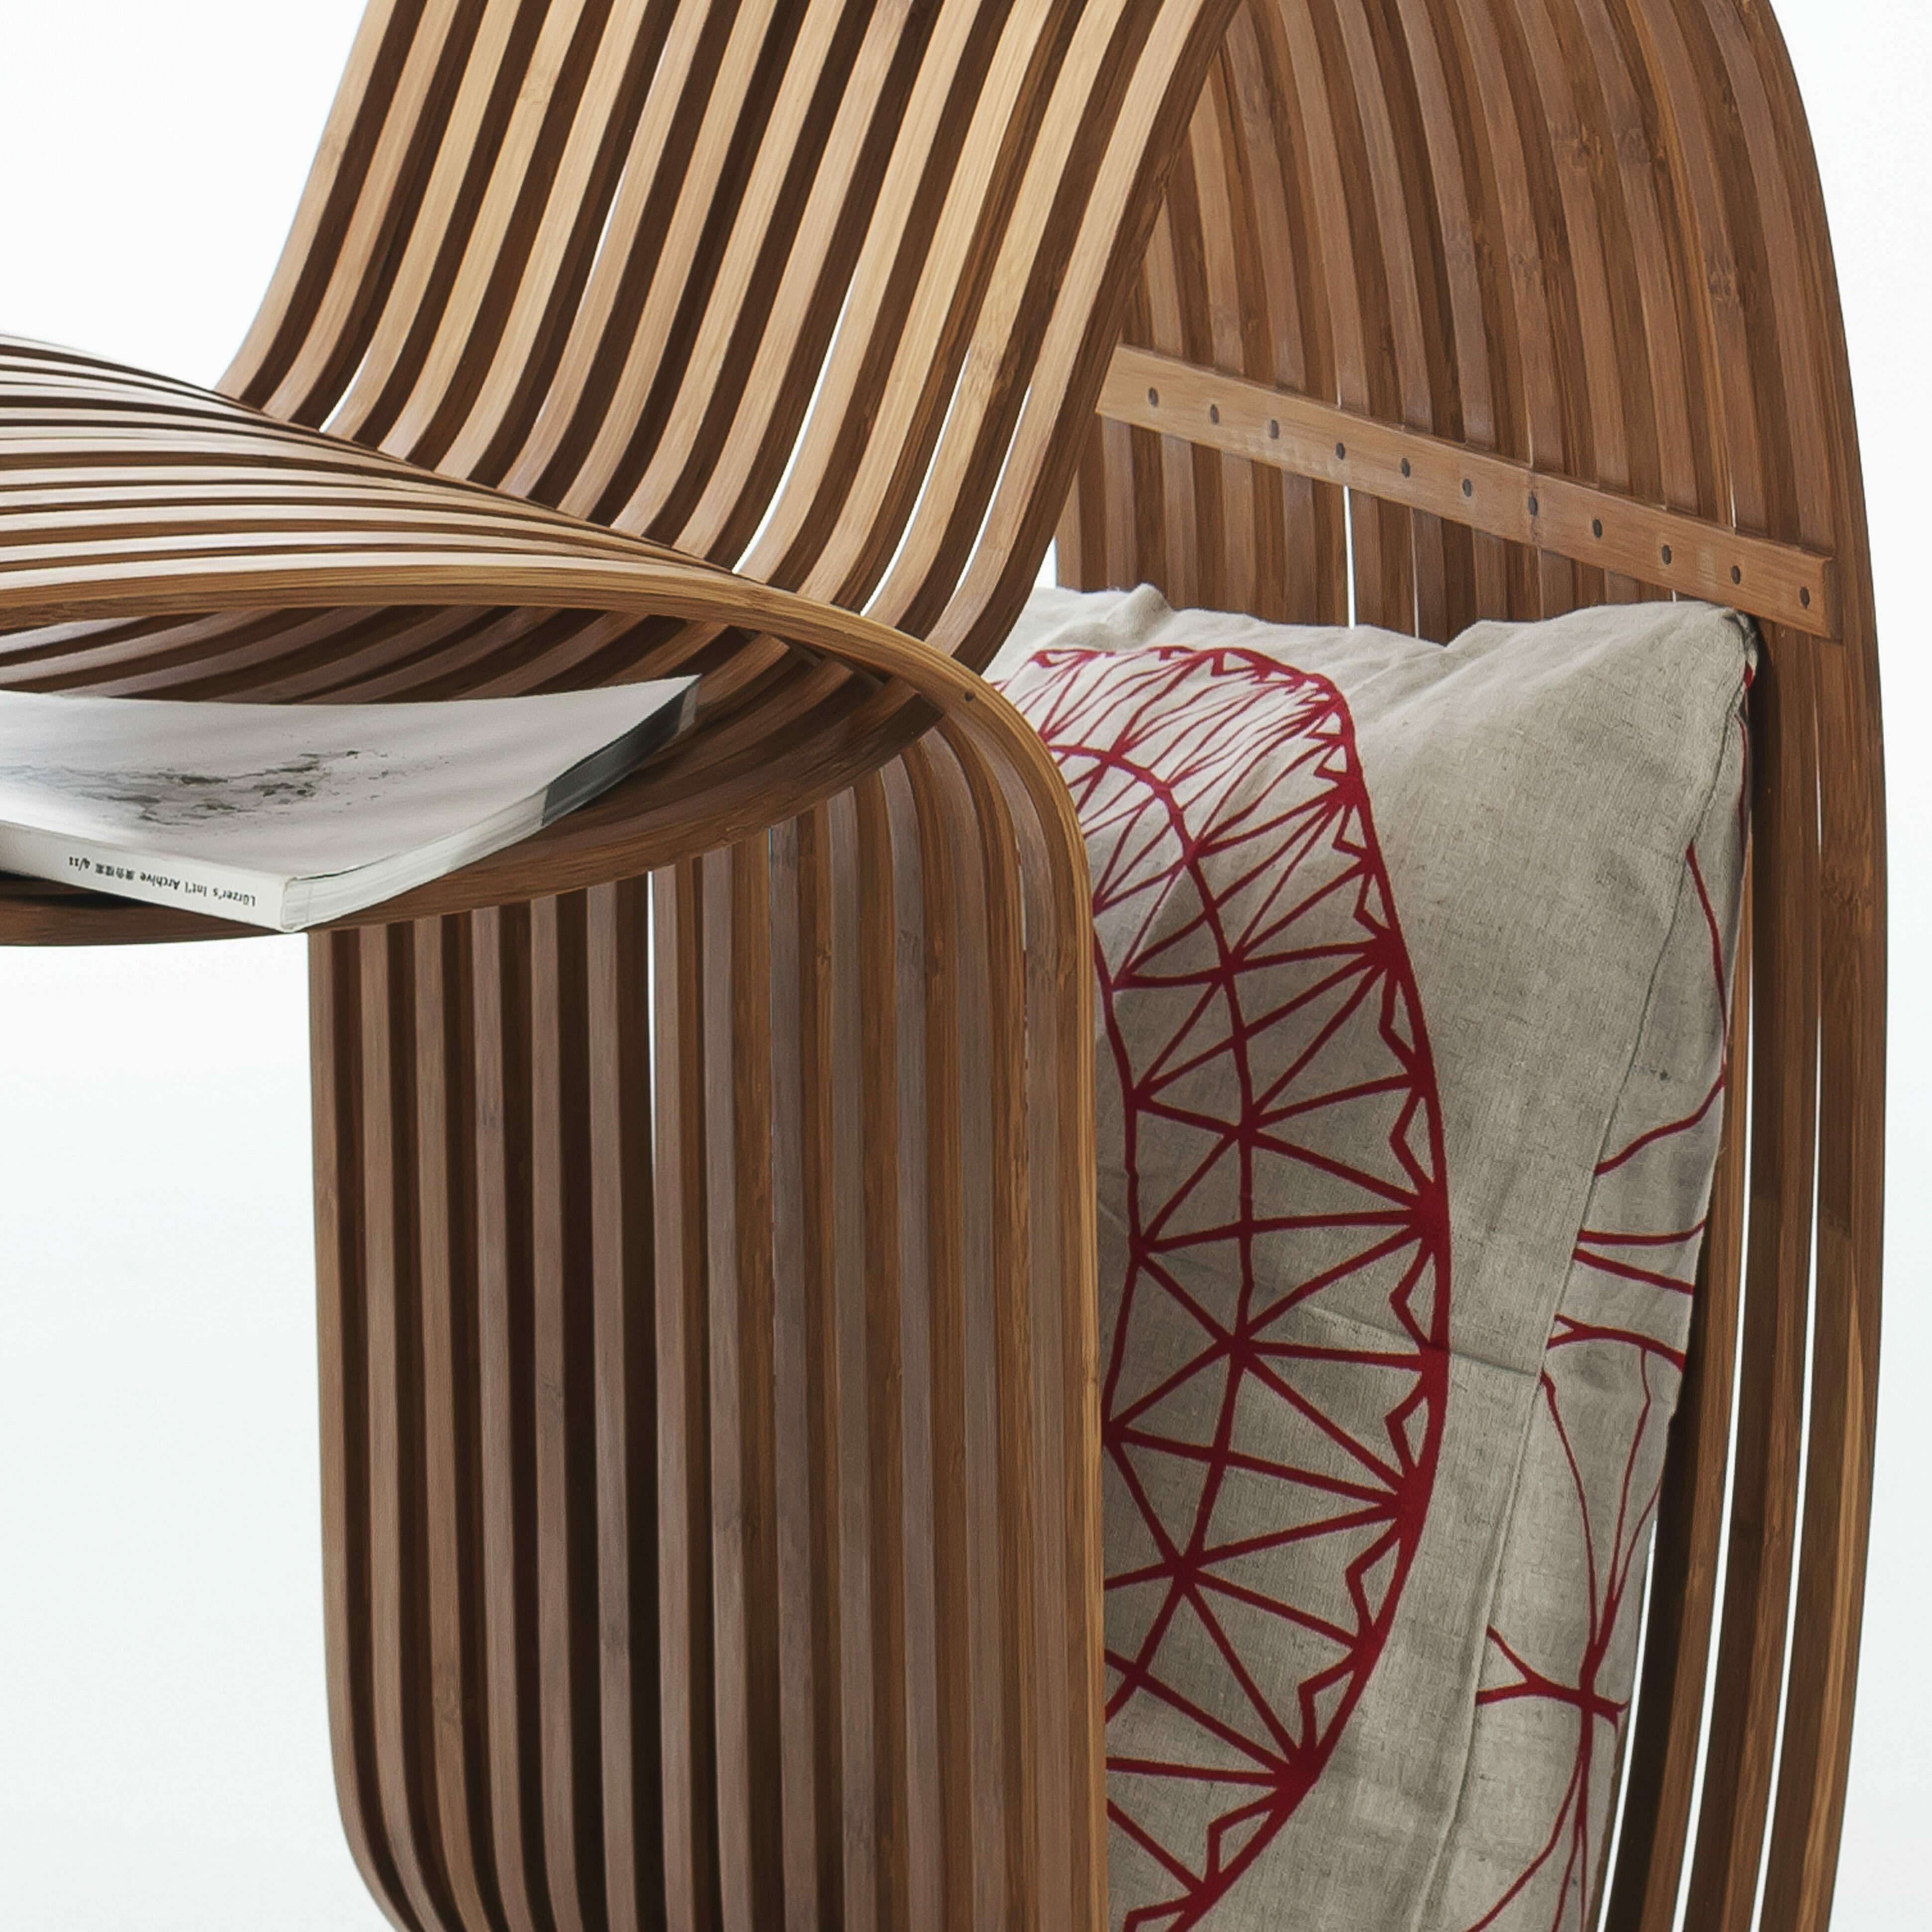 bow tie chair gridesign studio bambus stuhl dunkel design inneneinrichtung einrichtungsidee